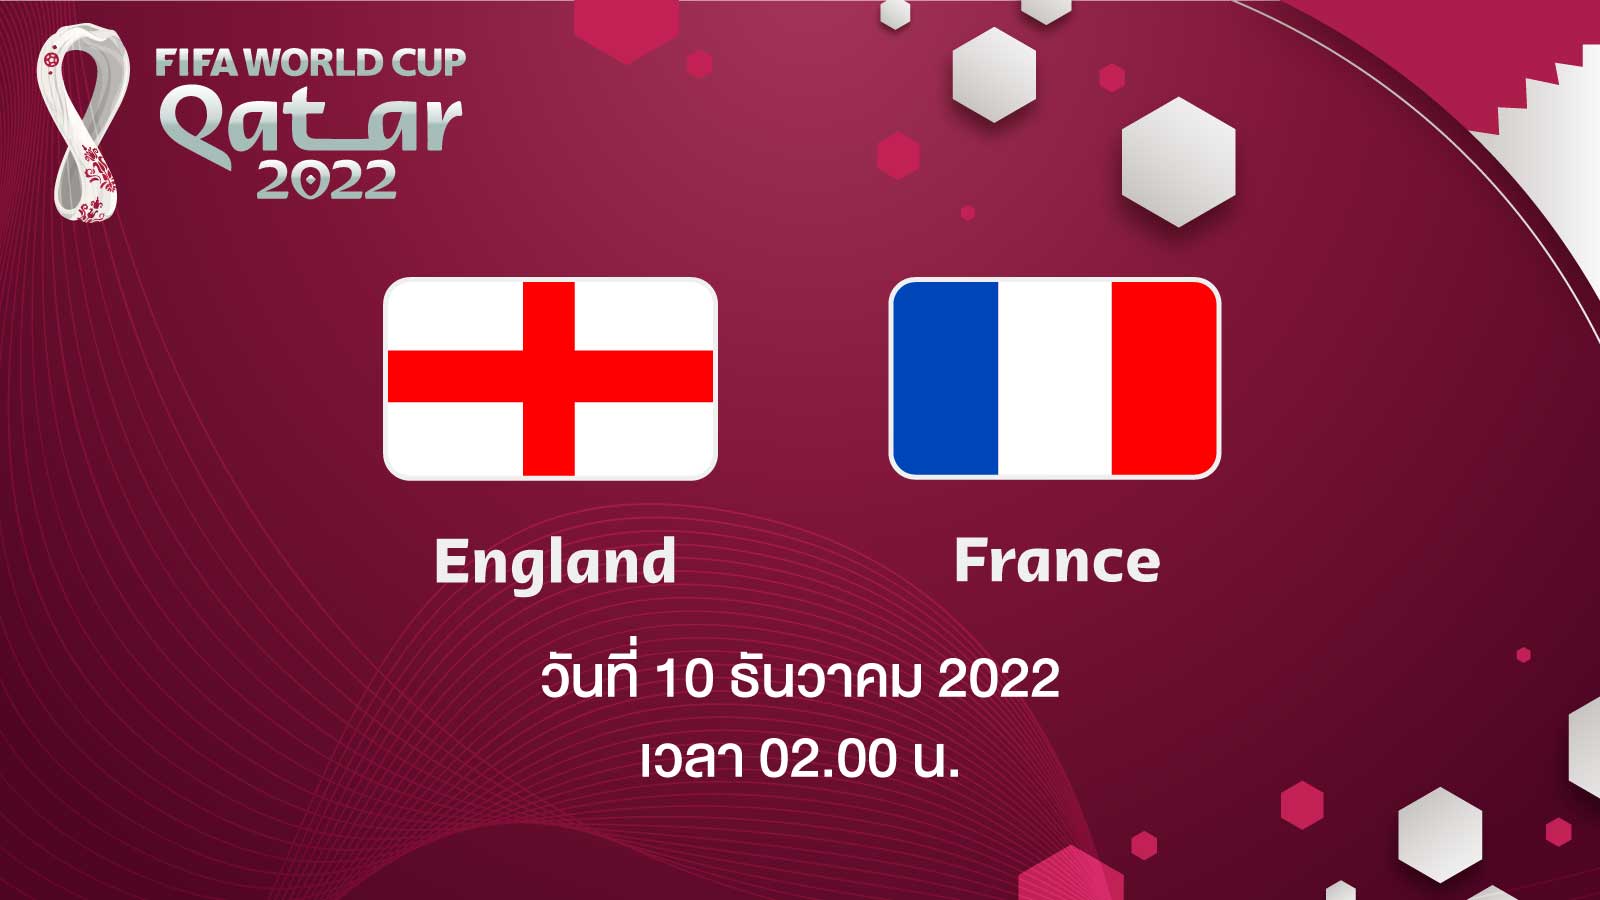 ฟุตบอลโลก 2022 รอบ 8 ทีมสุดท้าย ระหว่าง England vs France